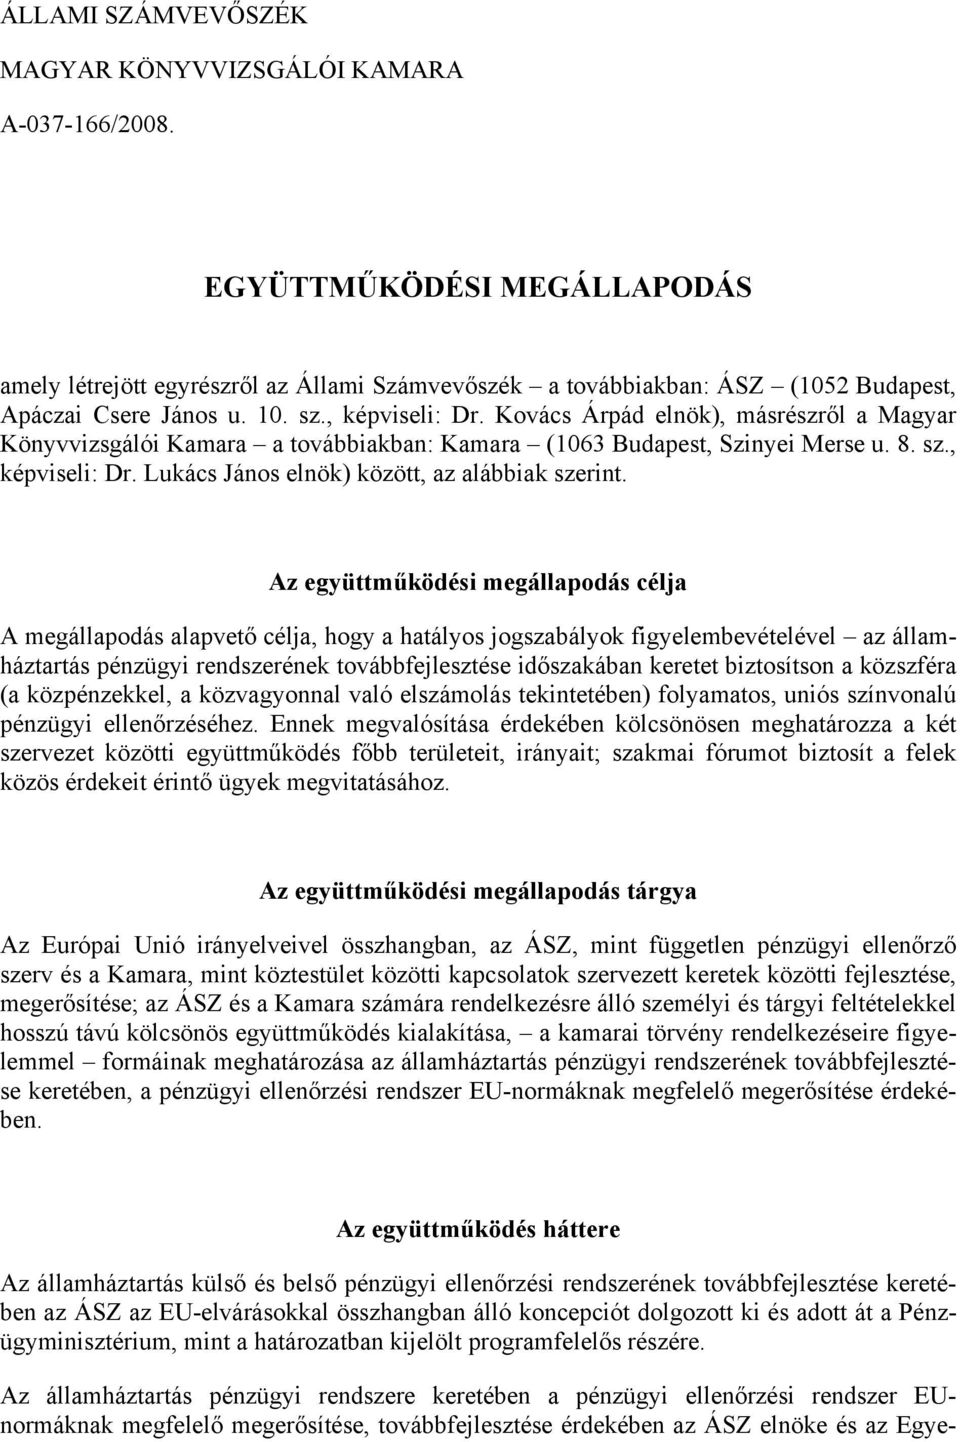 Kovács Árpád elnök), másrészről a Magyar Könyvvizsgálói Kamara a továbbiakban: Kamara (1063 Budapest, Szinyei Merse u. 8. sz., képviseli: Dr. Lukács János elnök) között, az alábbiak szerint.